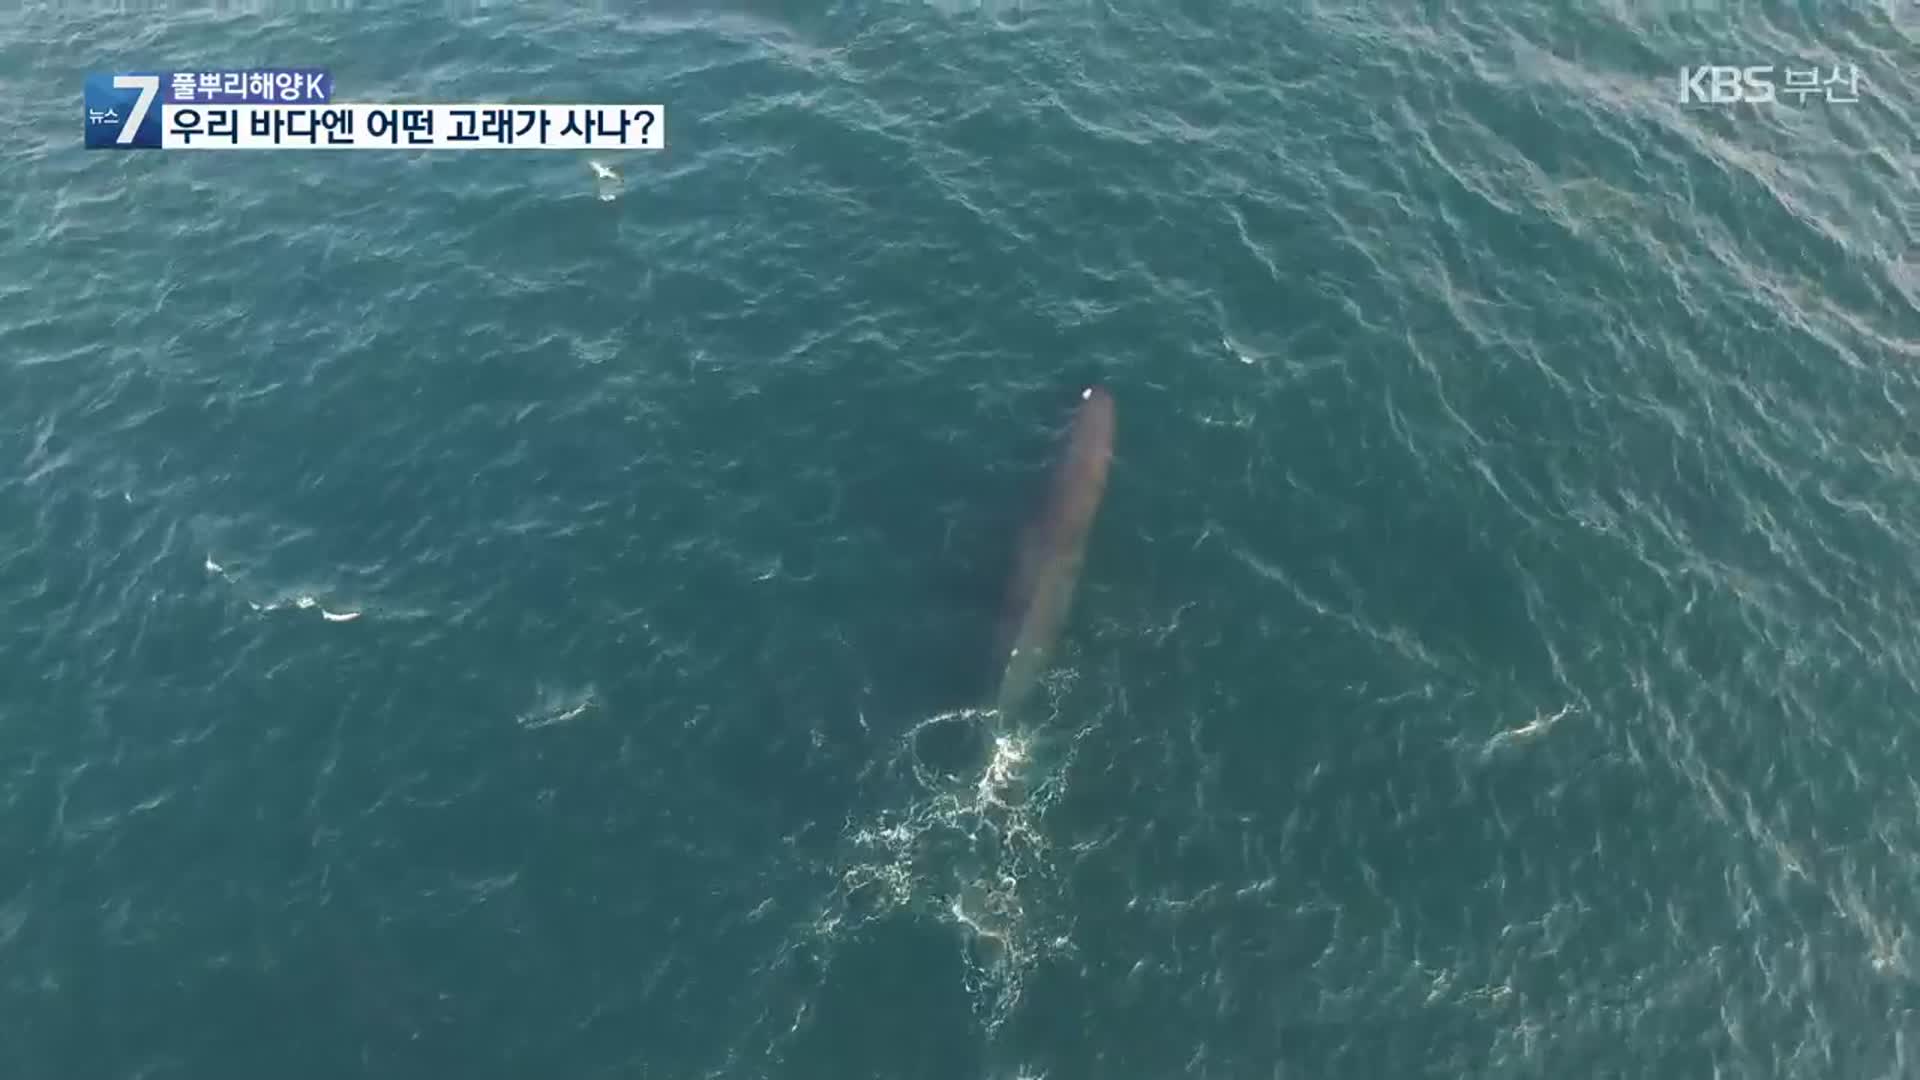 [풀뿌리 해양K] 우리 바다에 어떤 고래가 사나? 외